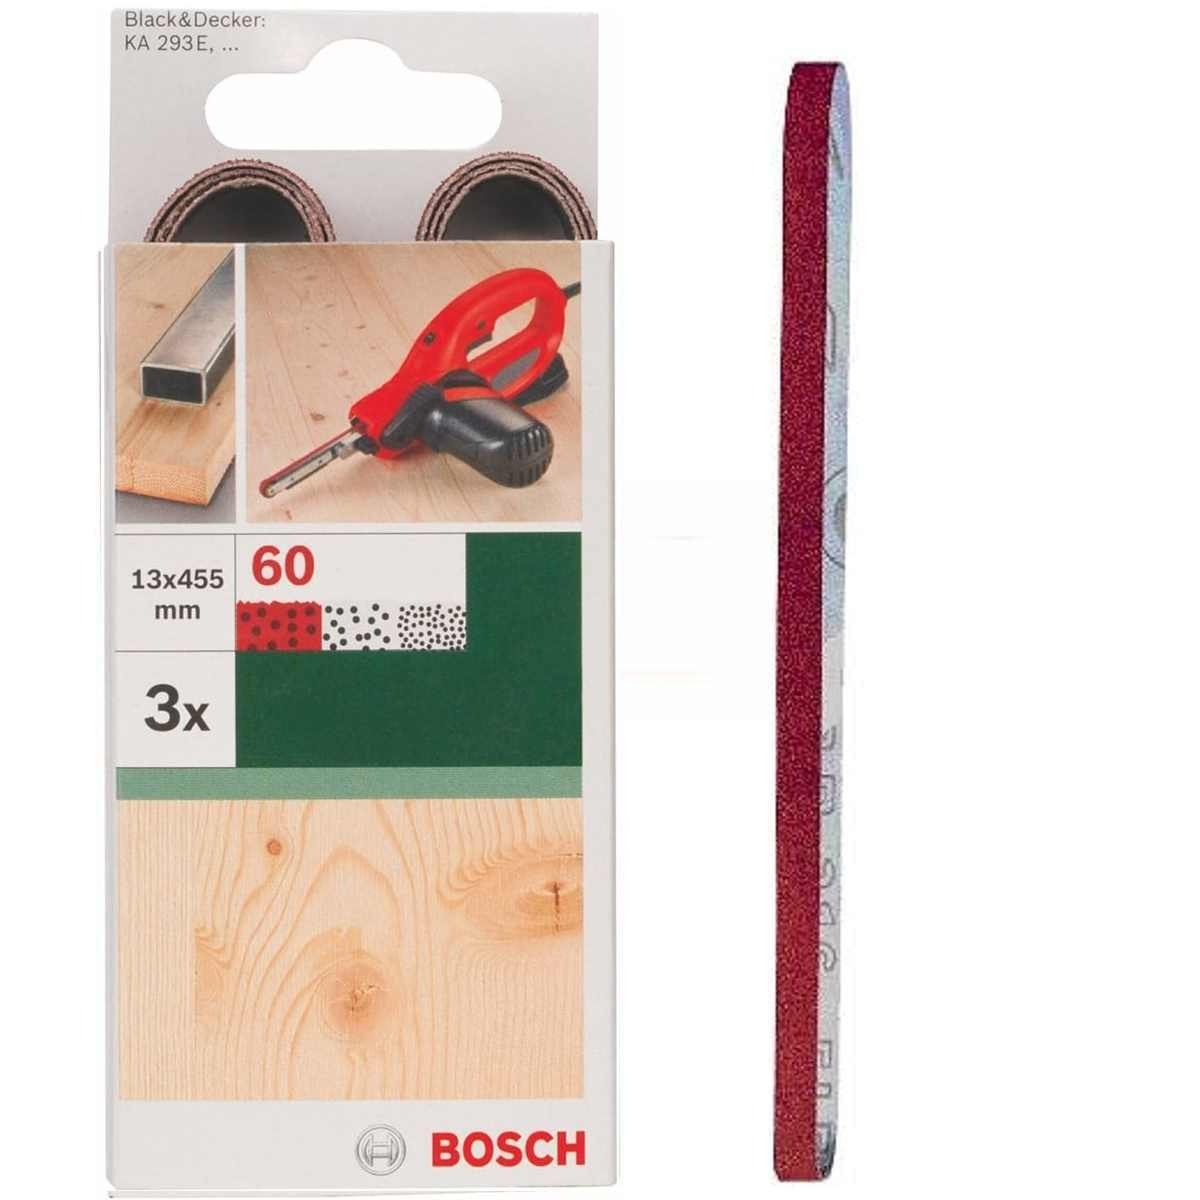 BOSCH Bohrfutter Bosch 3 Schleifbänder für B+D Powerfile KA 293E 13 x 451 mm, K 60